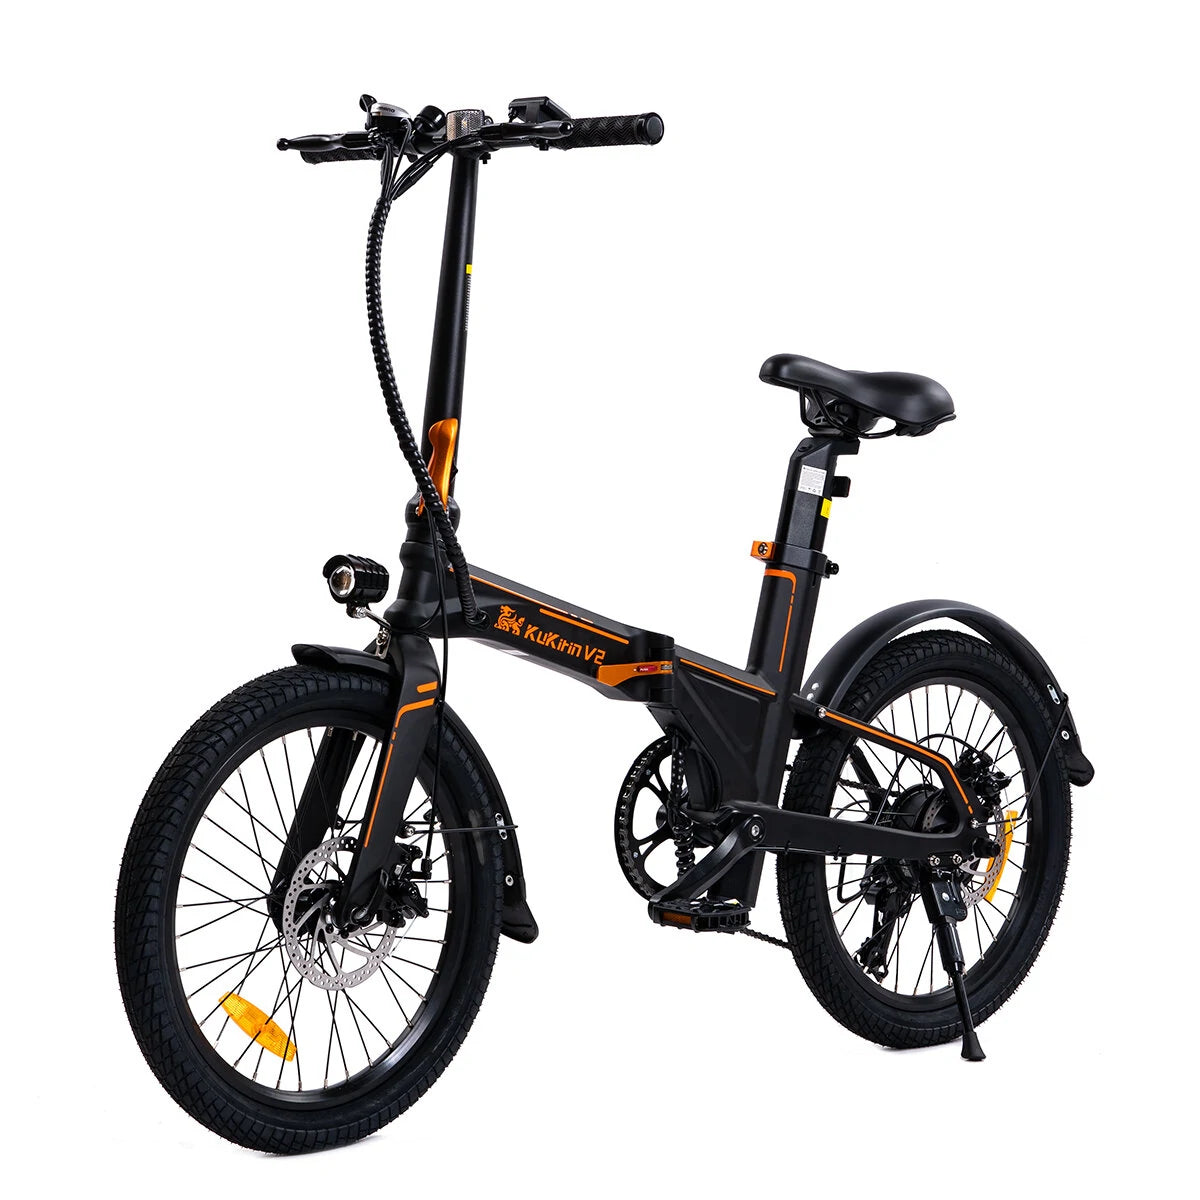 Kukirin V2 - Elektrische fiets - Vouwfiets - 250W